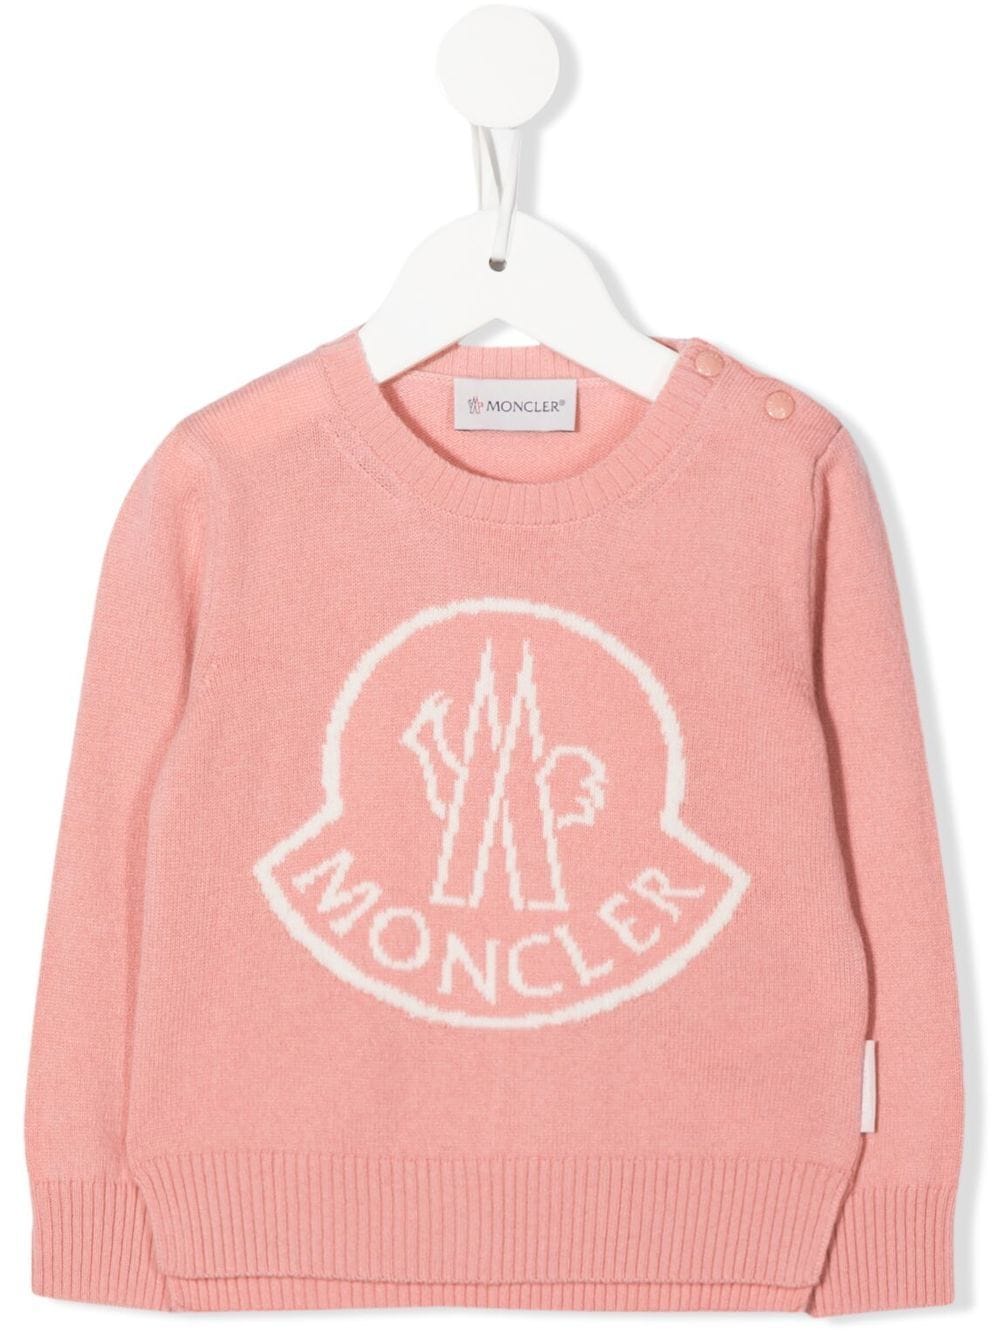 Moncler Enfant wool-cashmere logo knit jumper - Pink von Moncler Enfant